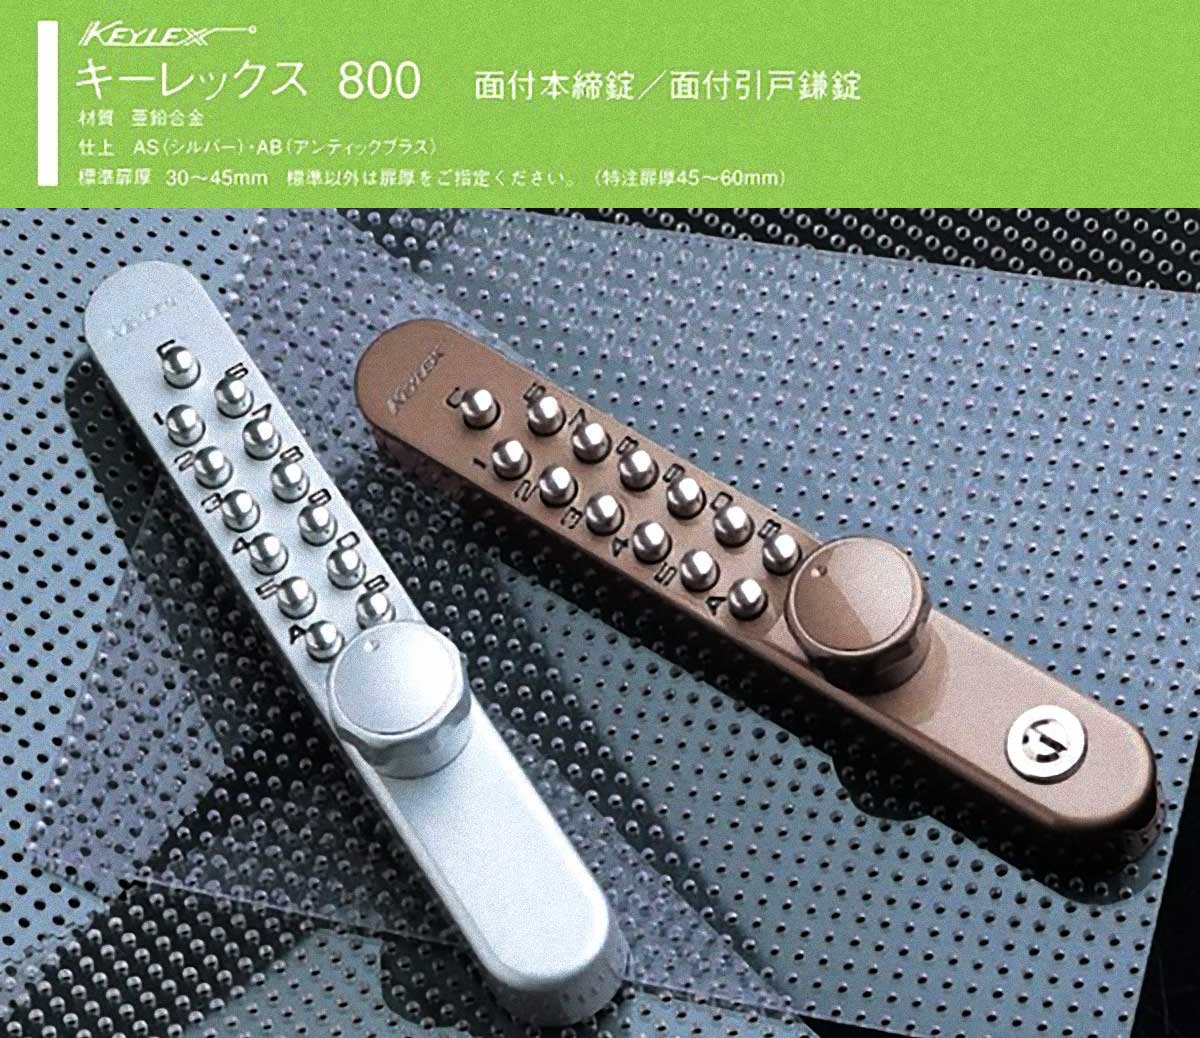 NAGASAWA キーレックス800 面付引戸鎌錠鍵付 ロックターンタイプ シルバー 22805M - 2